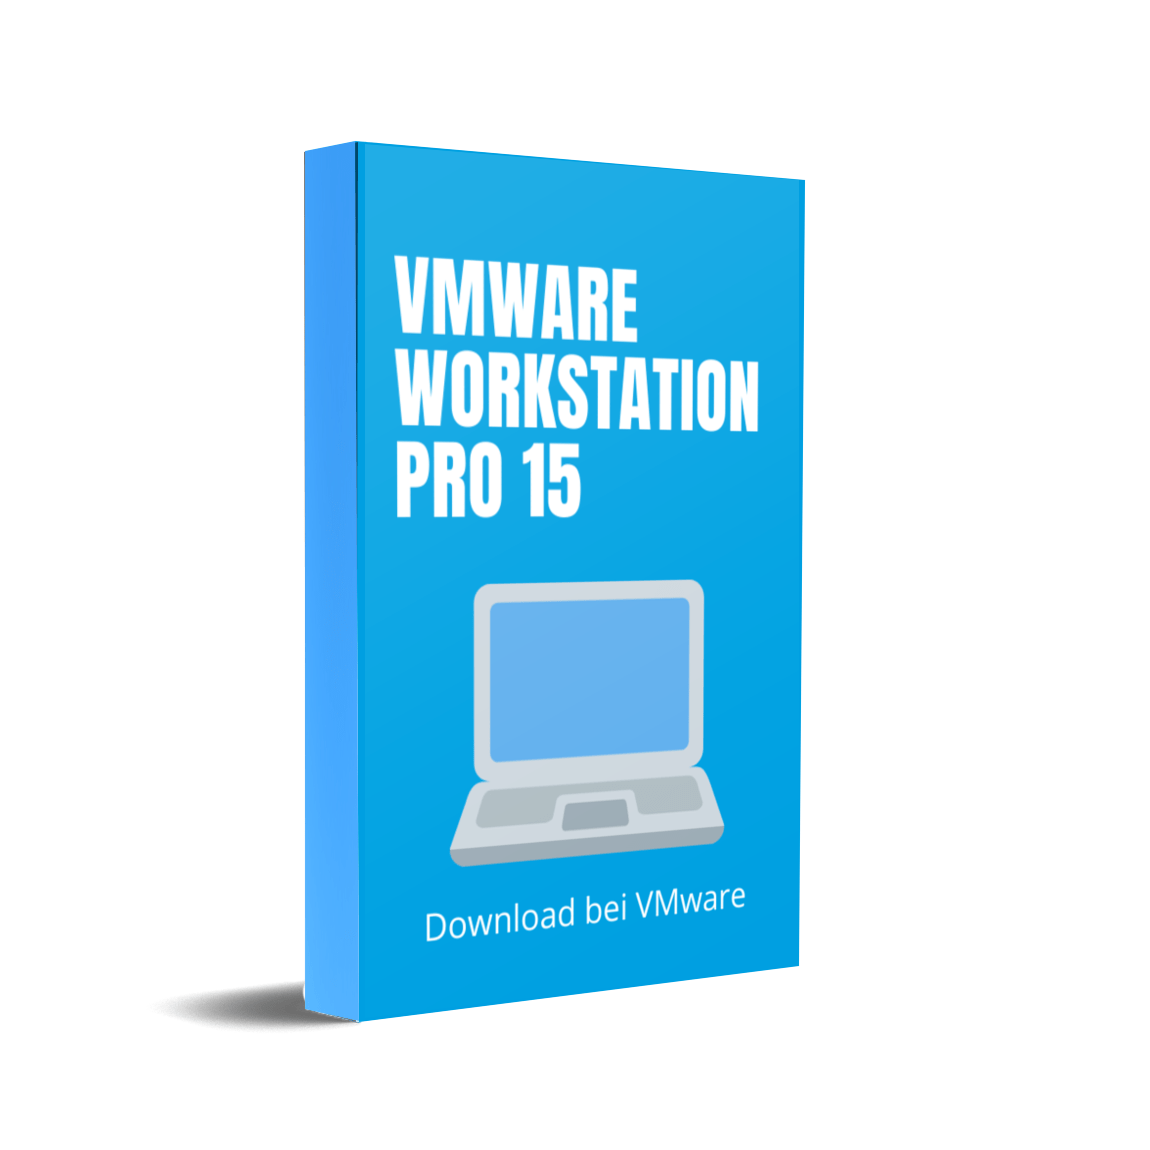 vmware workstation pro 15.5 0 download